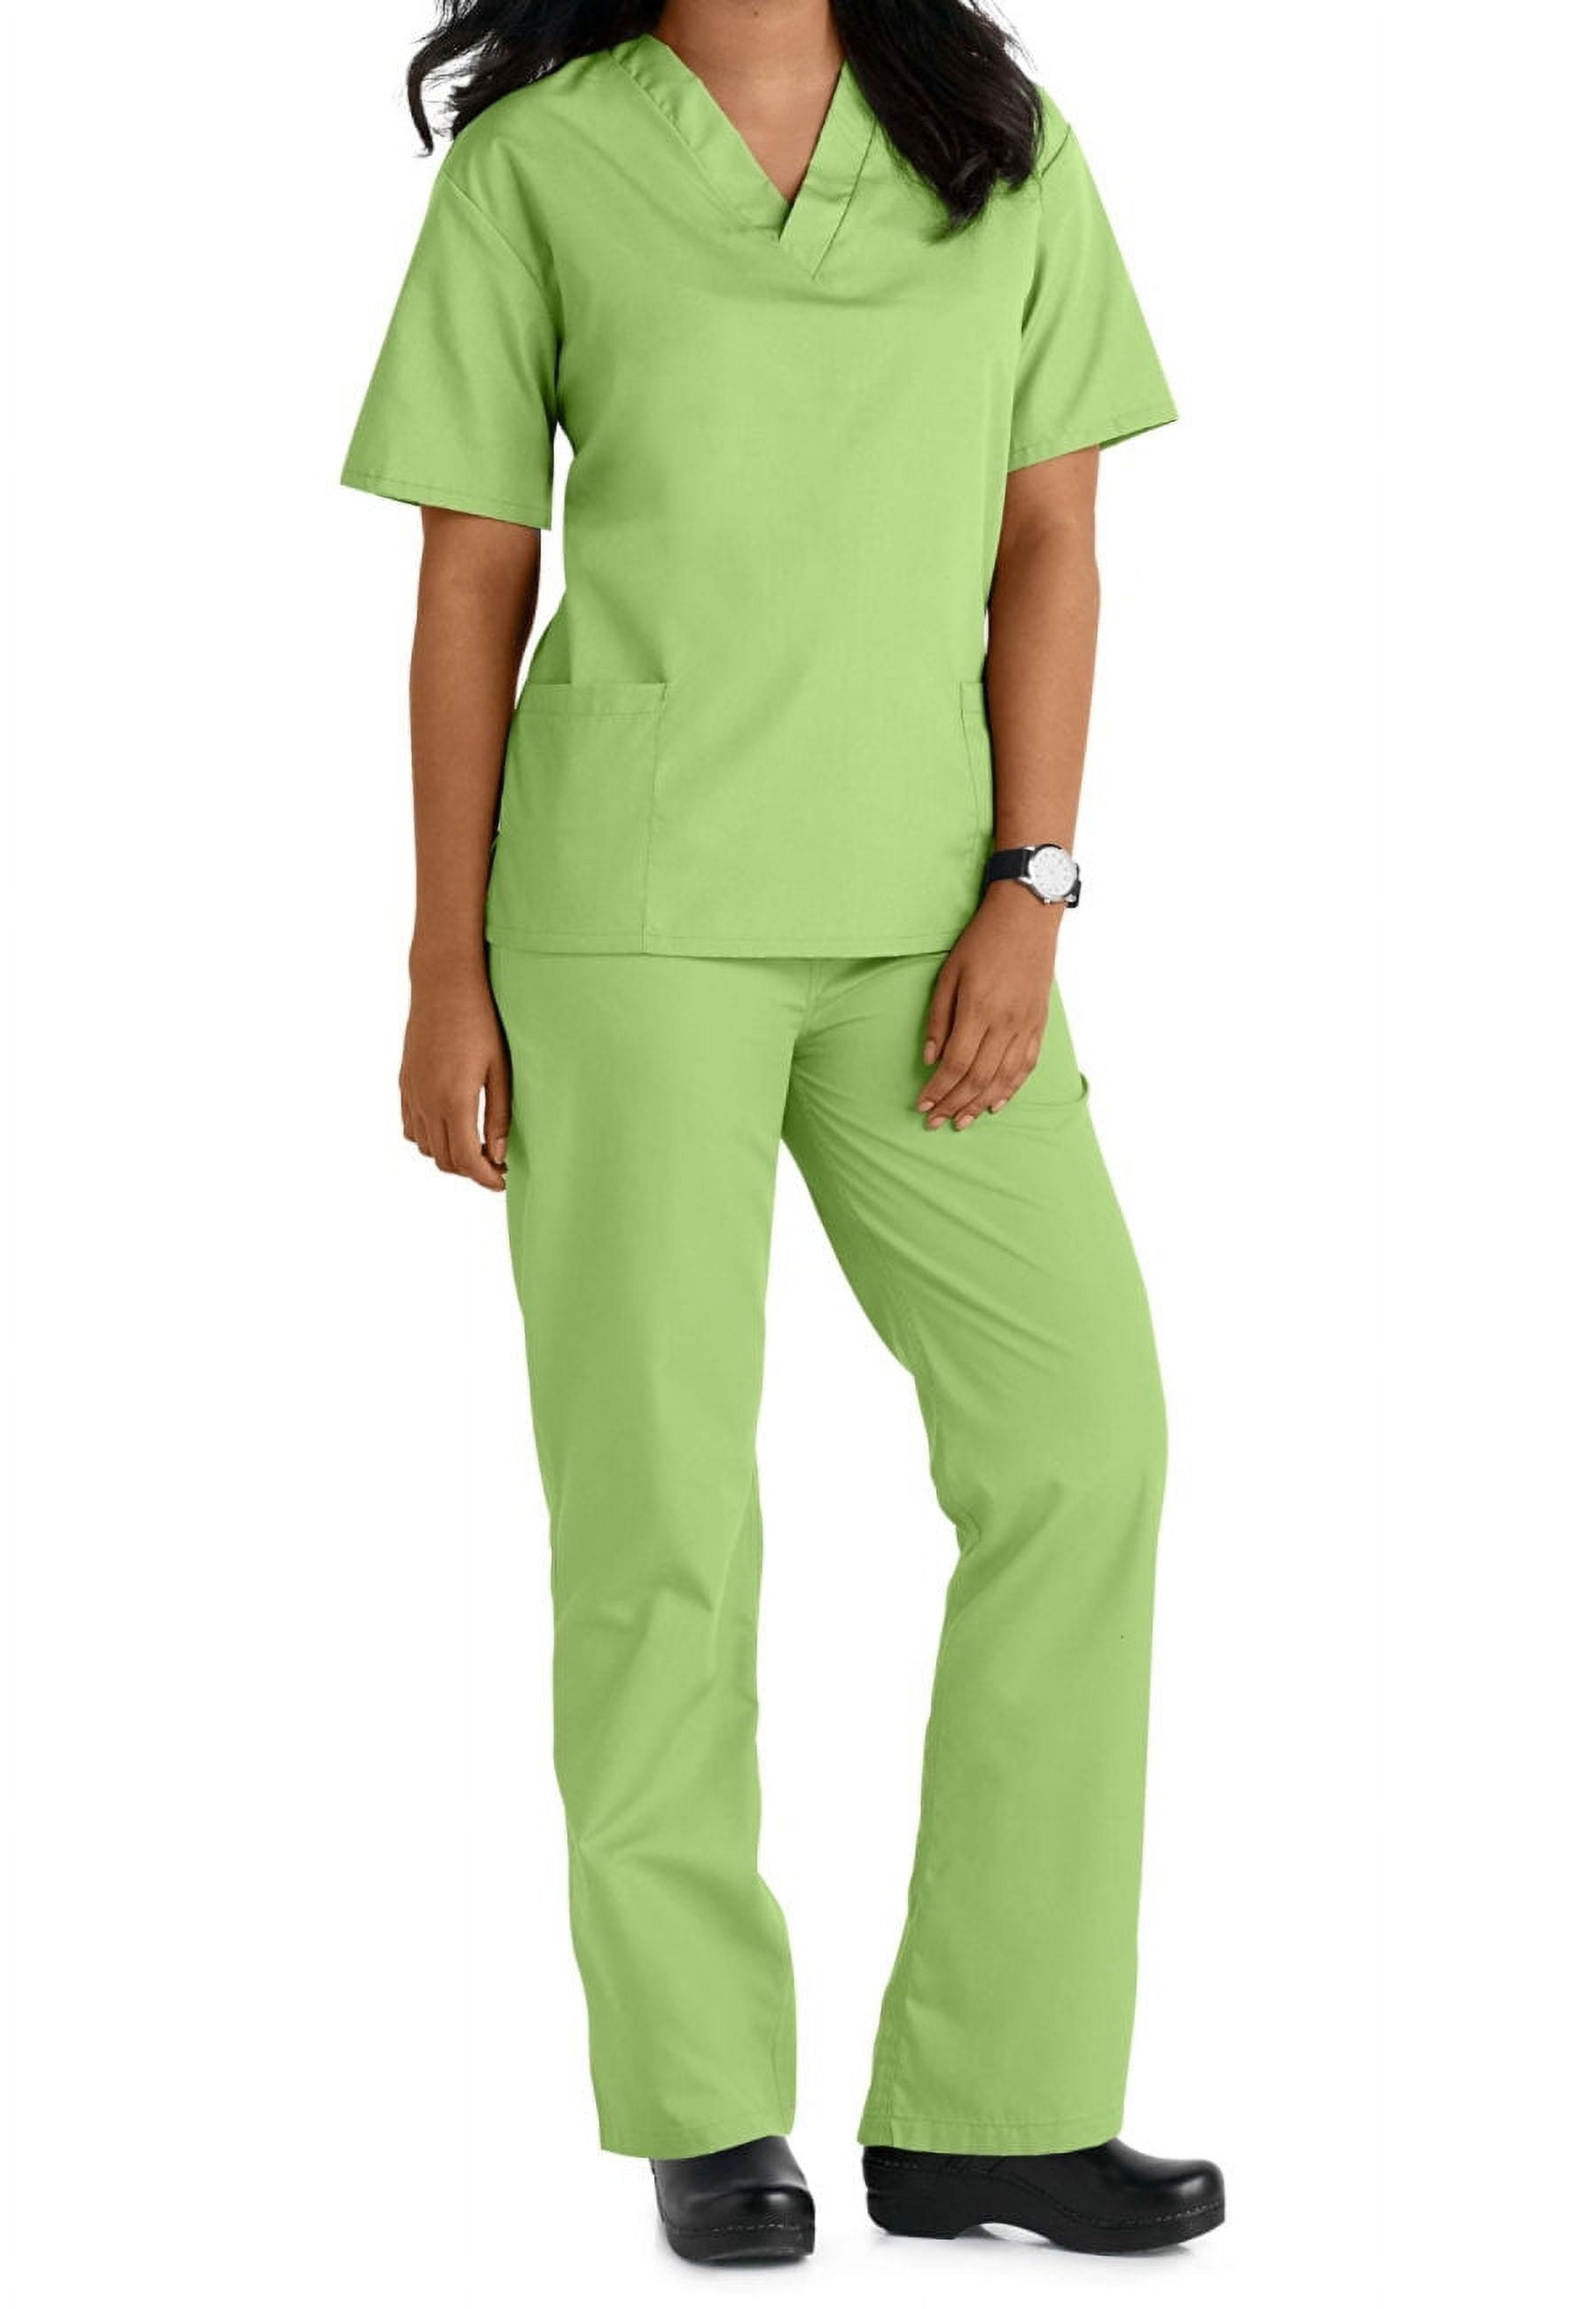 Nurse top, Patent Uniform, nurses uniform manufacturer, nurses uniform  supplier